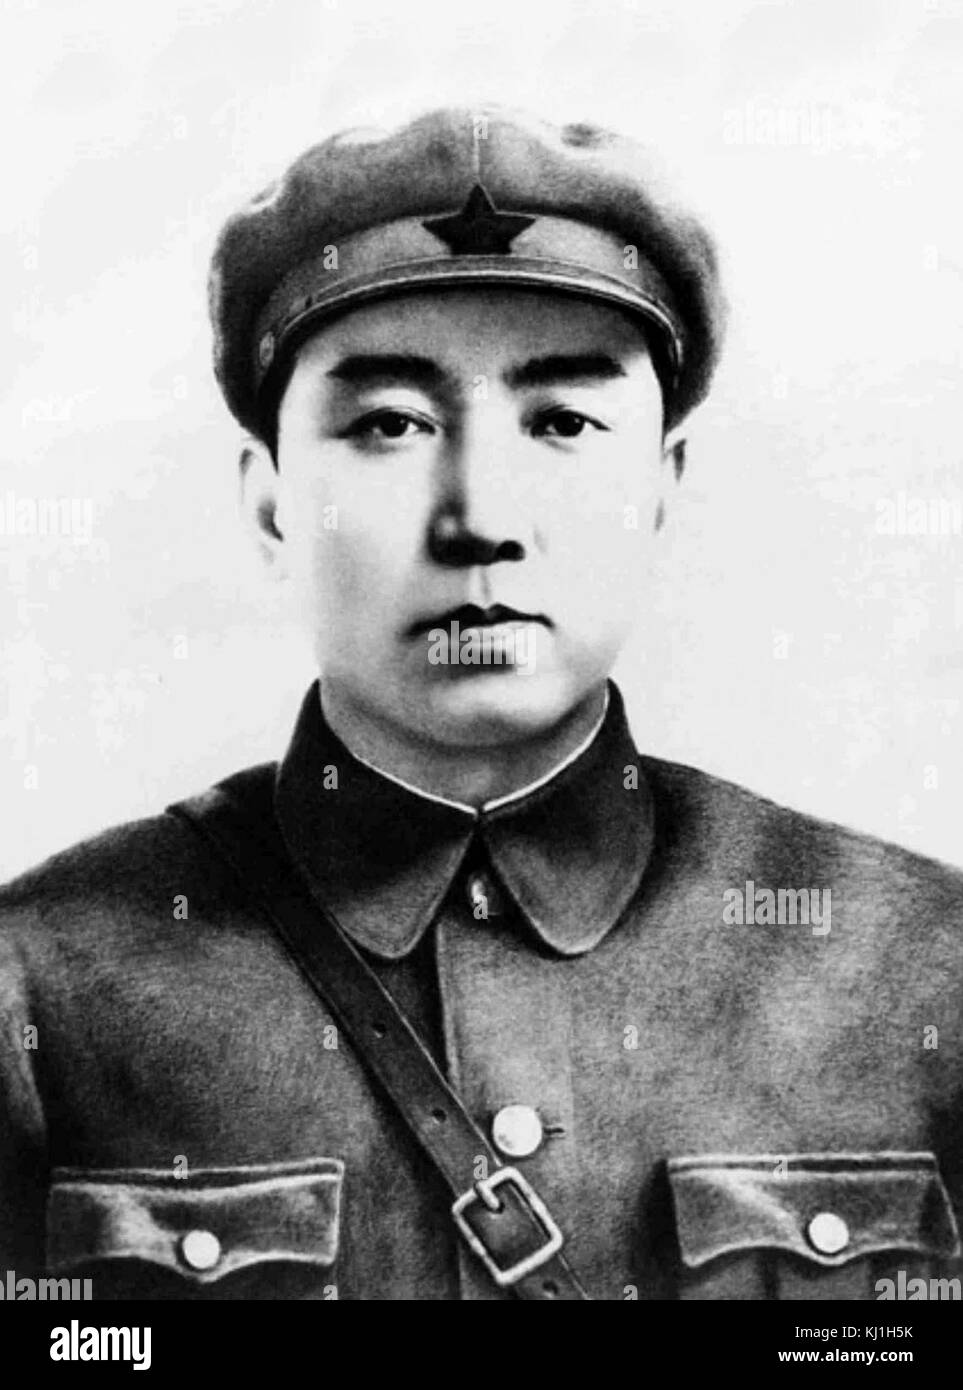 Kim Il Sung (1912 - 1994), était le chef suprême de la République populaire démocratique de Corée, communément appelé la Corée du Nord, depuis 46 ans, à partir de sa création en 1948 jusqu'à sa mort en 1994 Banque D'Images